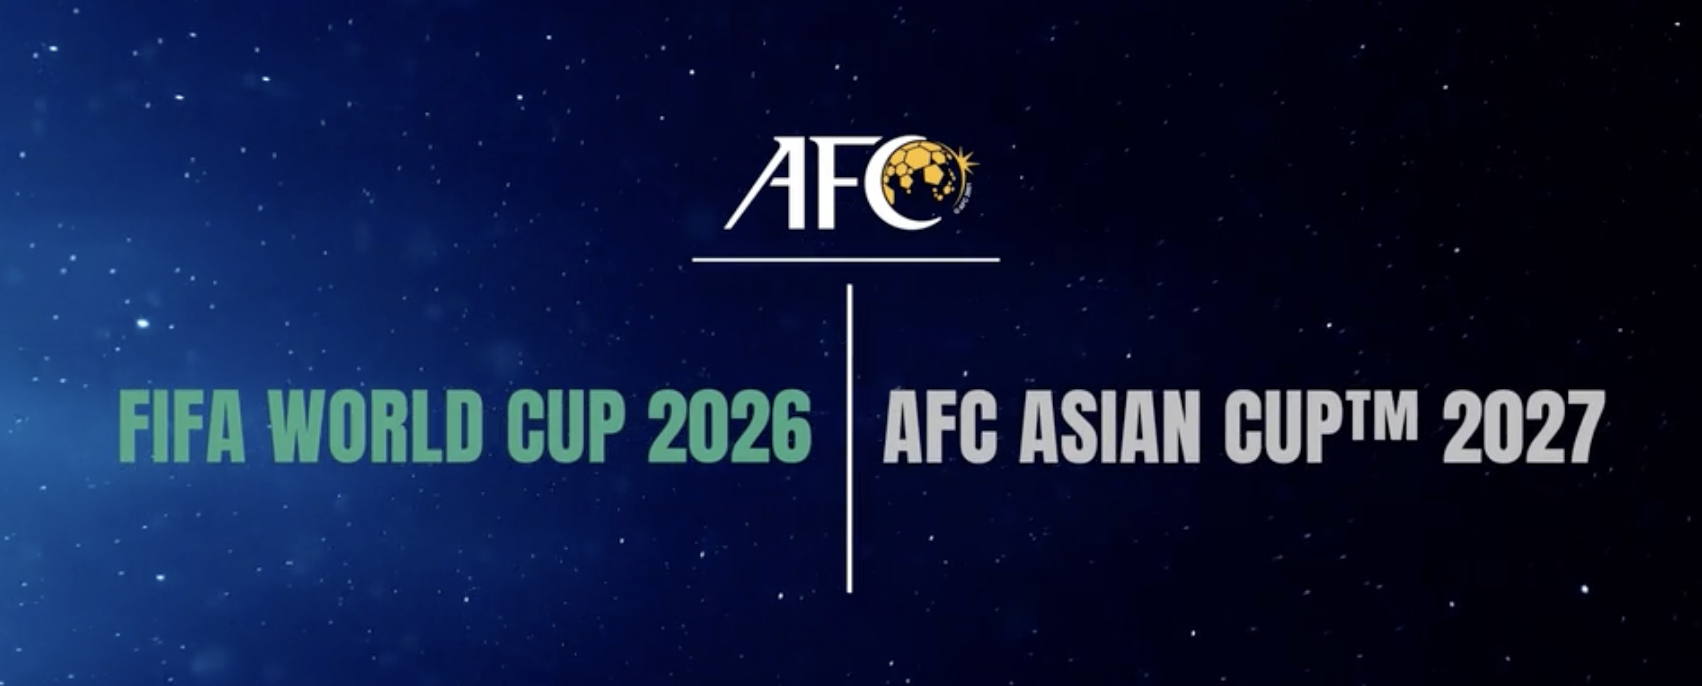 АФК окреслює кваліфікаційний шлях до чемпіонату світу 2026 року та чемпіонату Азії 2027 року